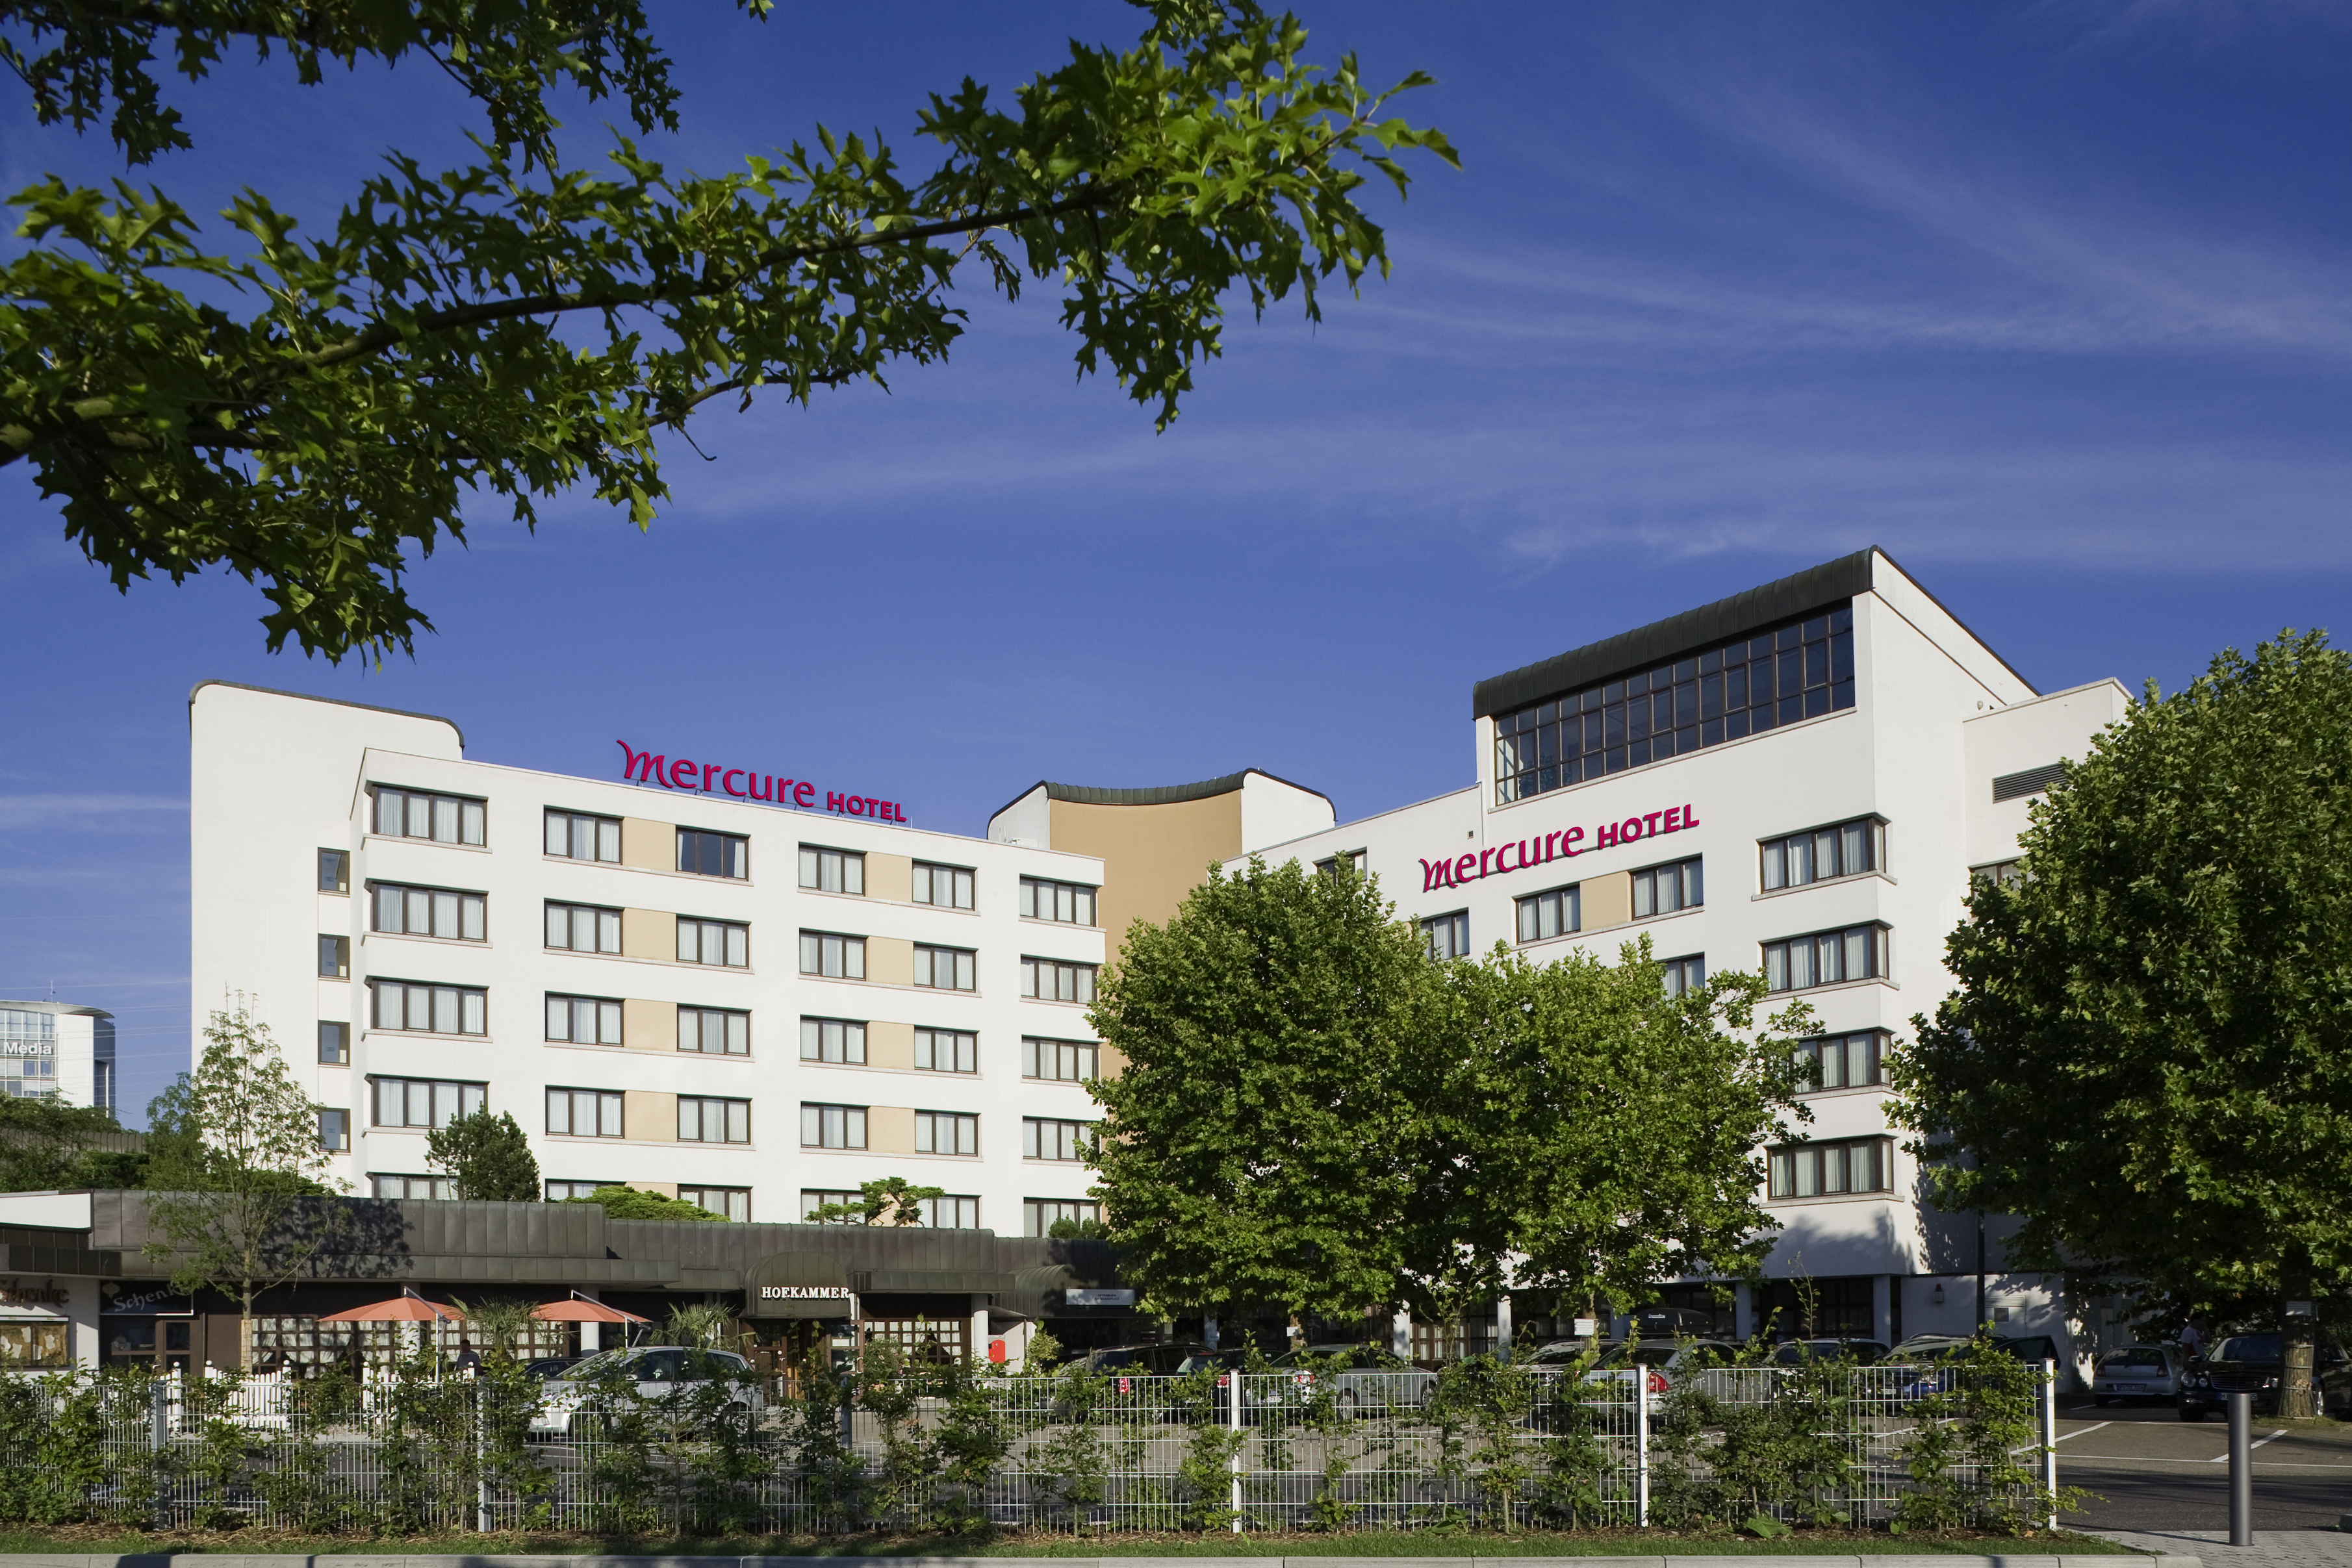 Mercure Hotel Offenburg am Messeplatz in Offenburg bei Sulz